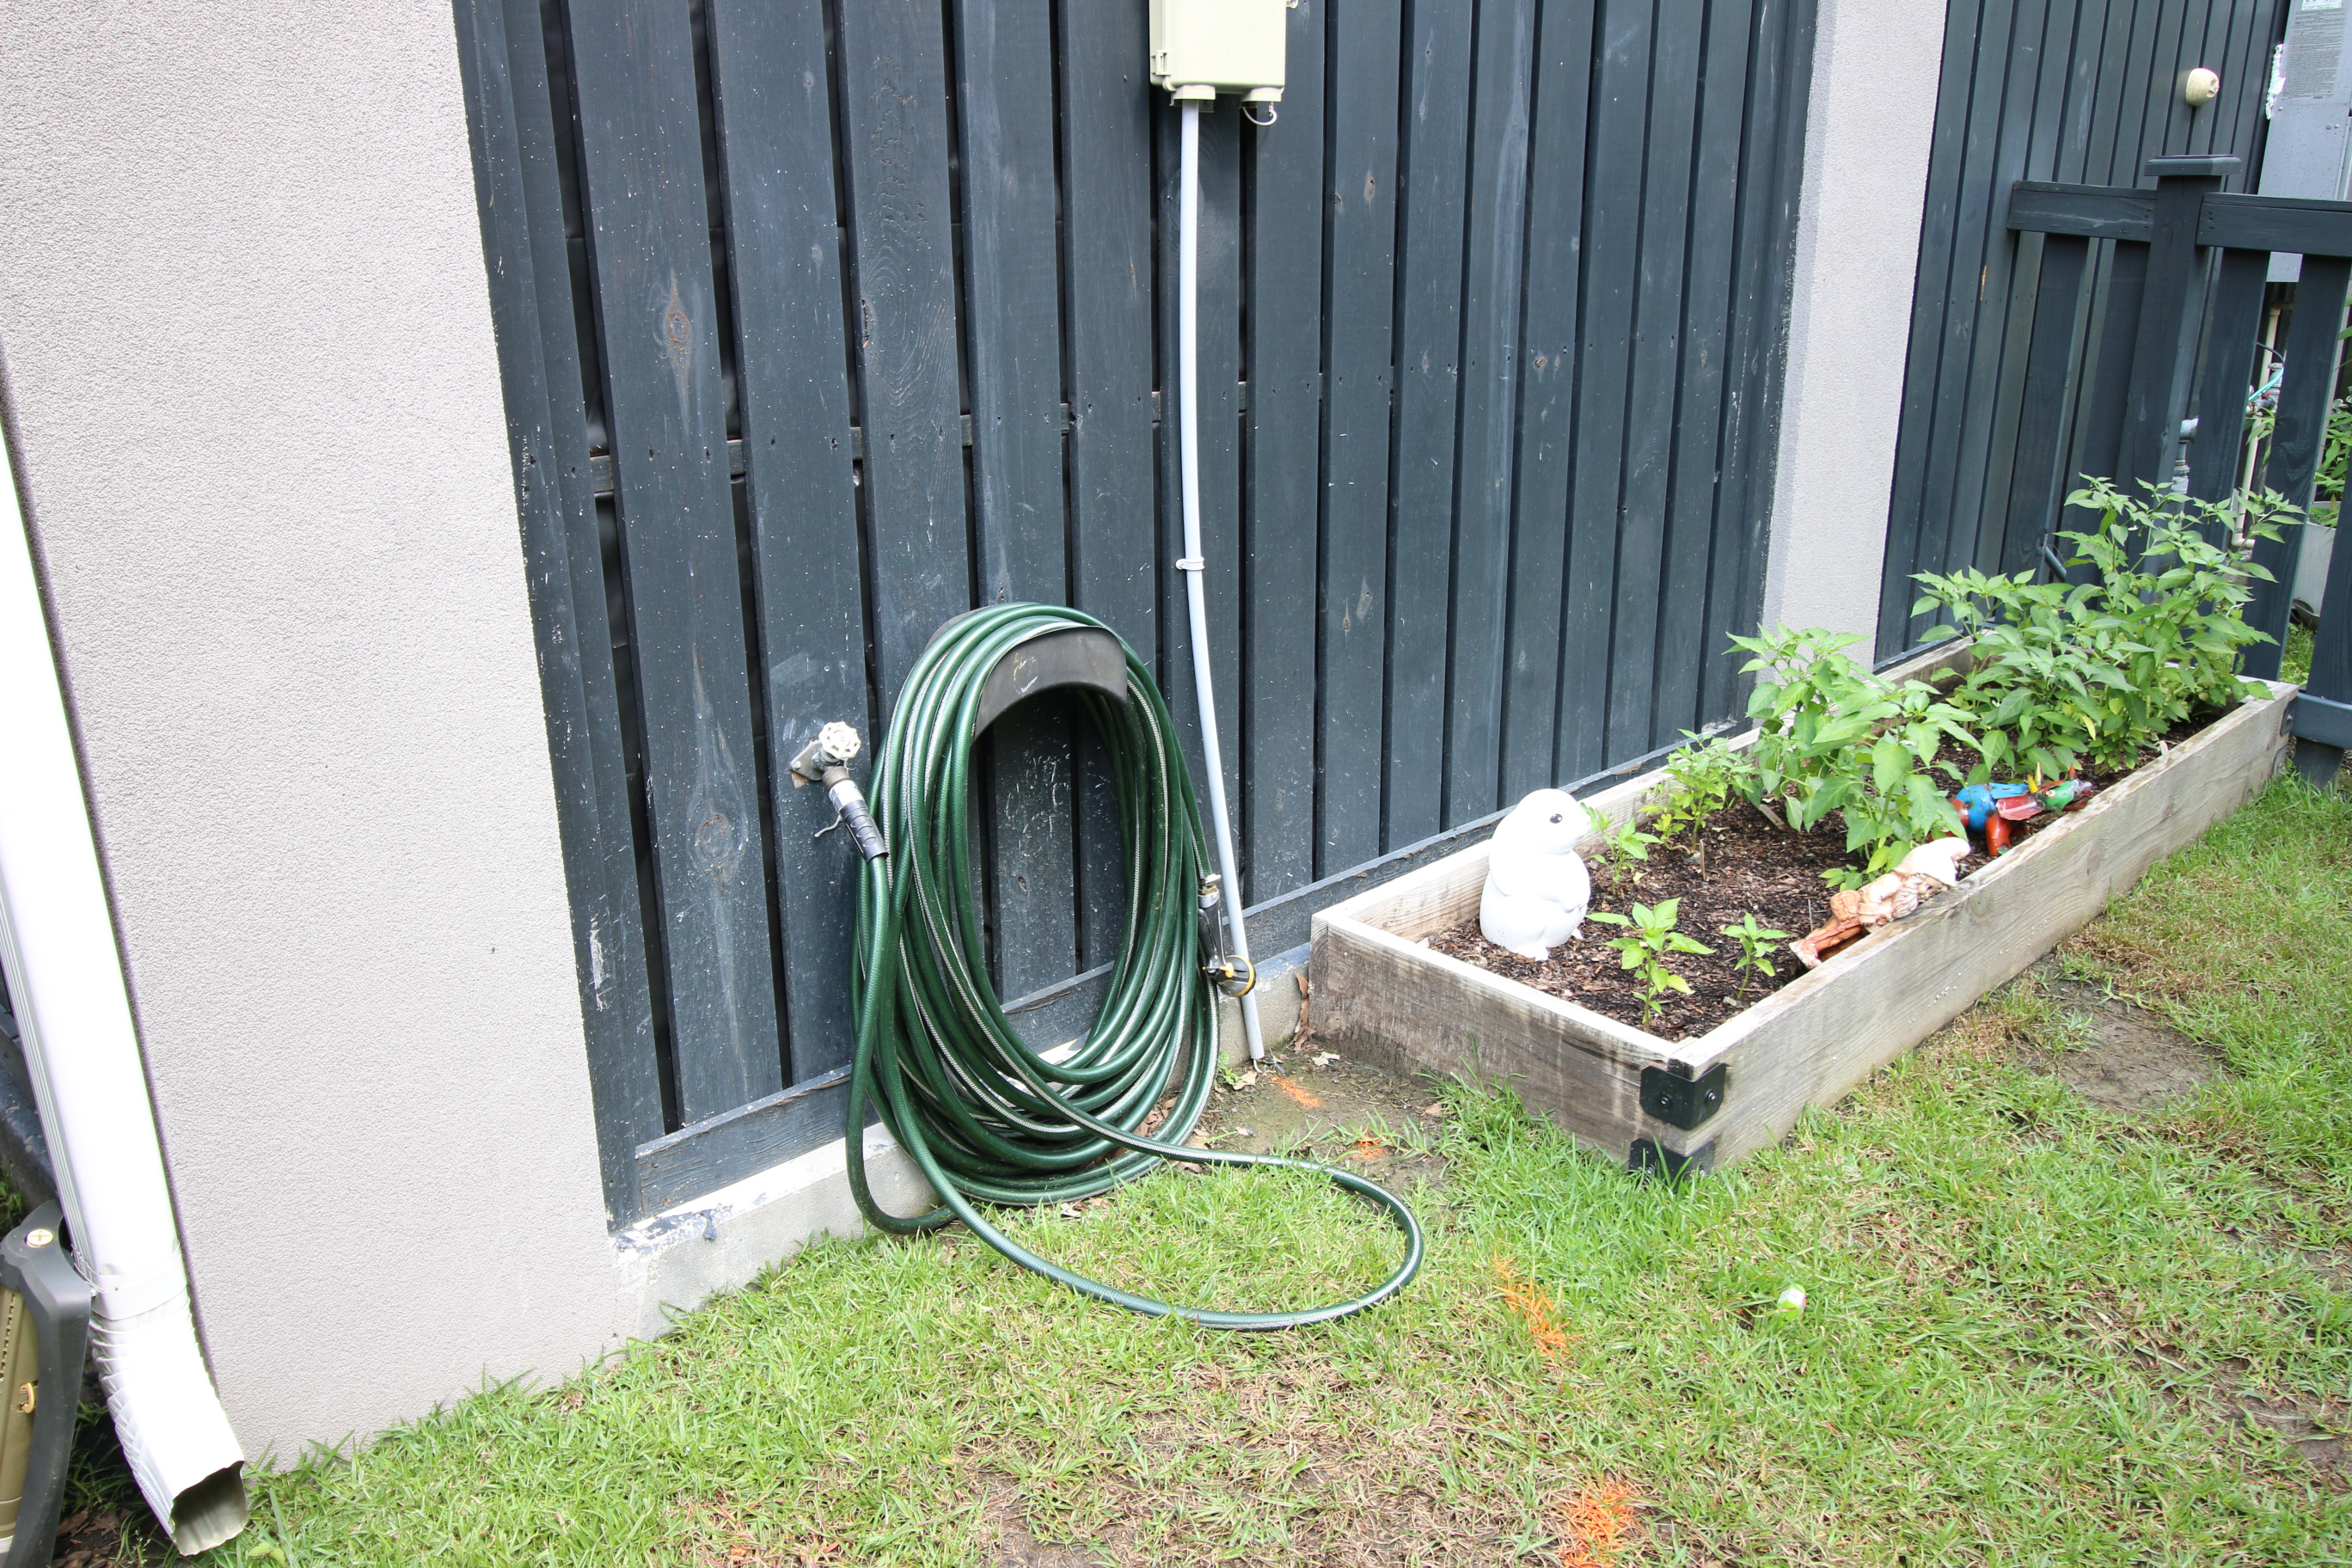 Old hose on hanger in garden